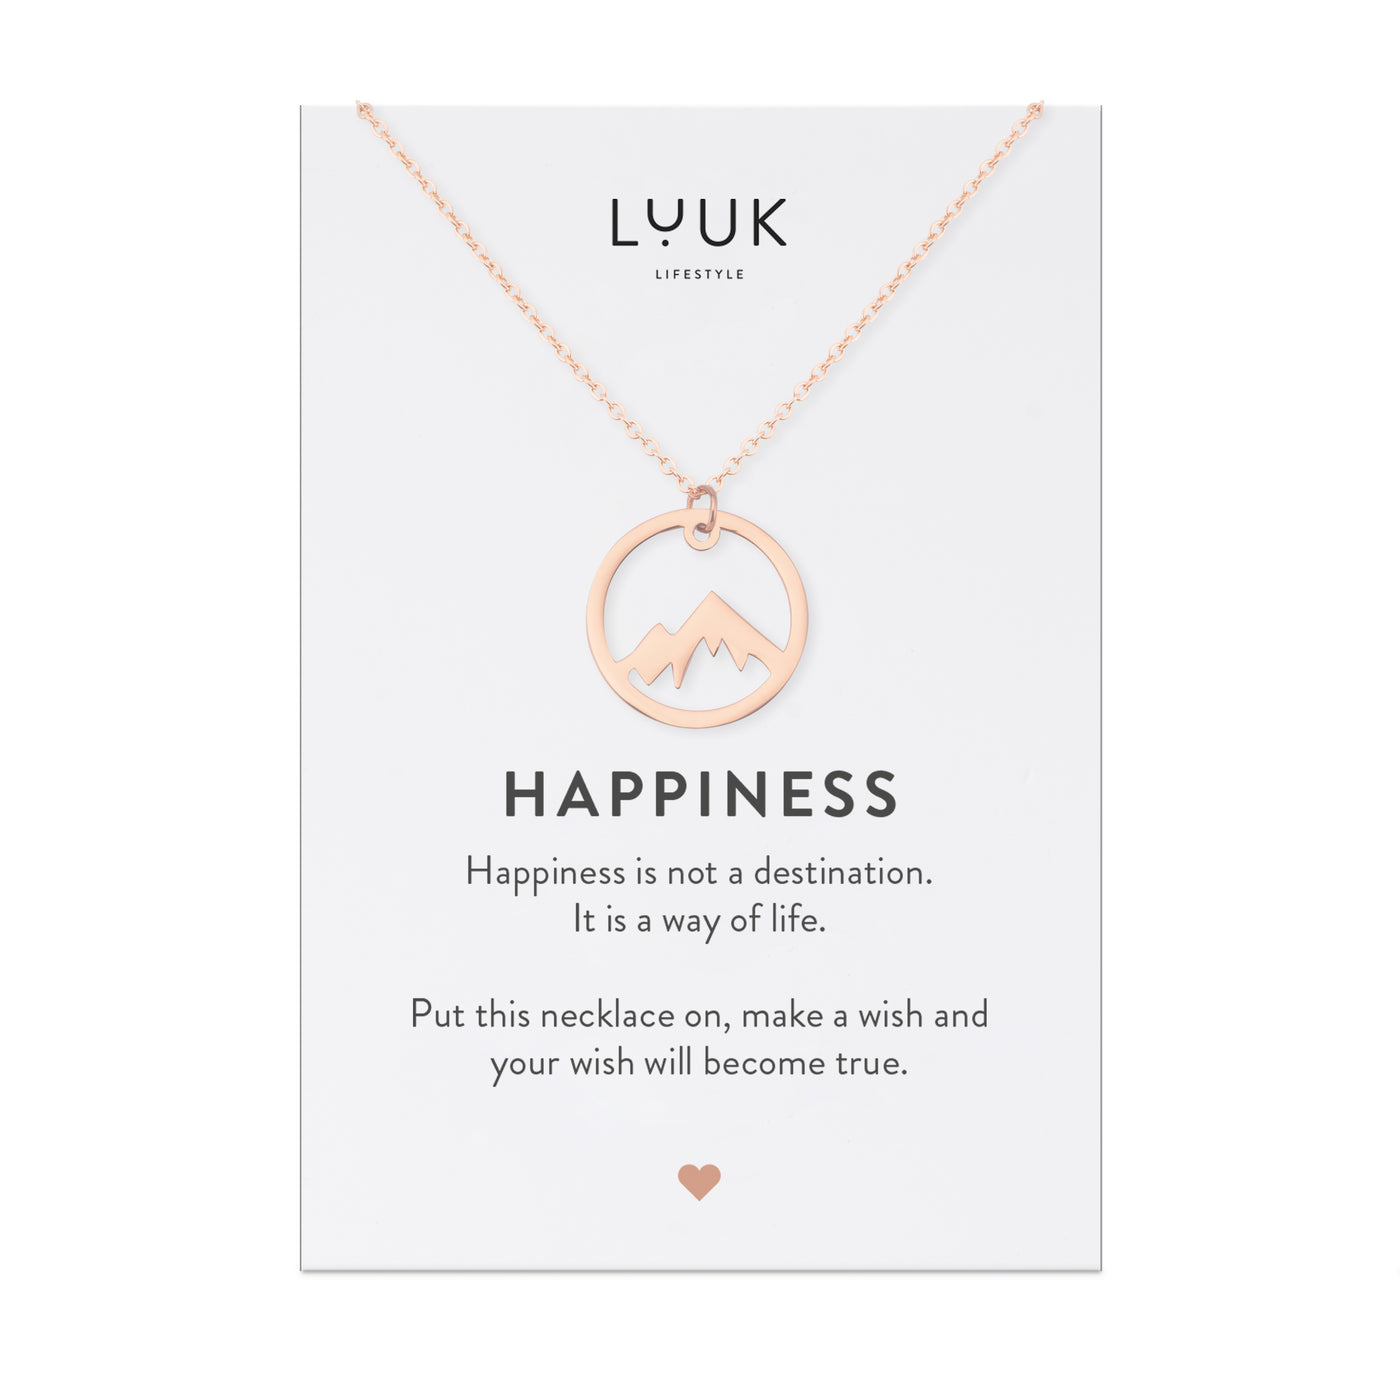 Rosegoldene Halskette mit Berggipfel Anhänger auf Happiness Karte von Luuk Lifestyle.